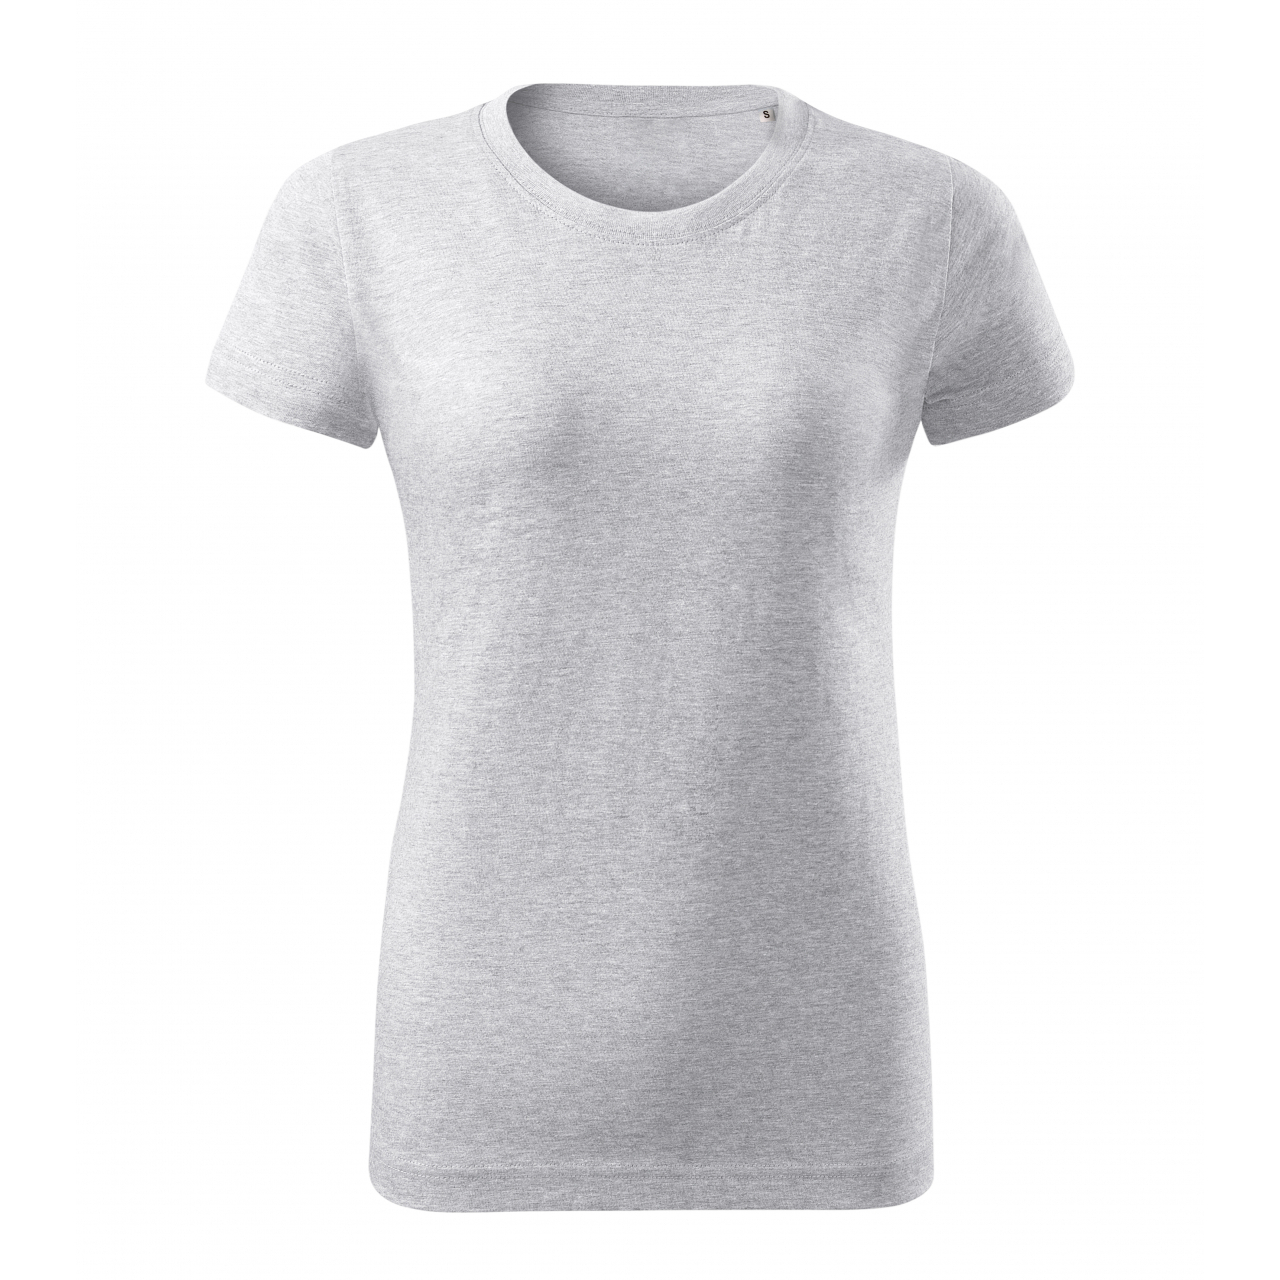 Tričko dámské Malfini Basic Free - světle šedé, L